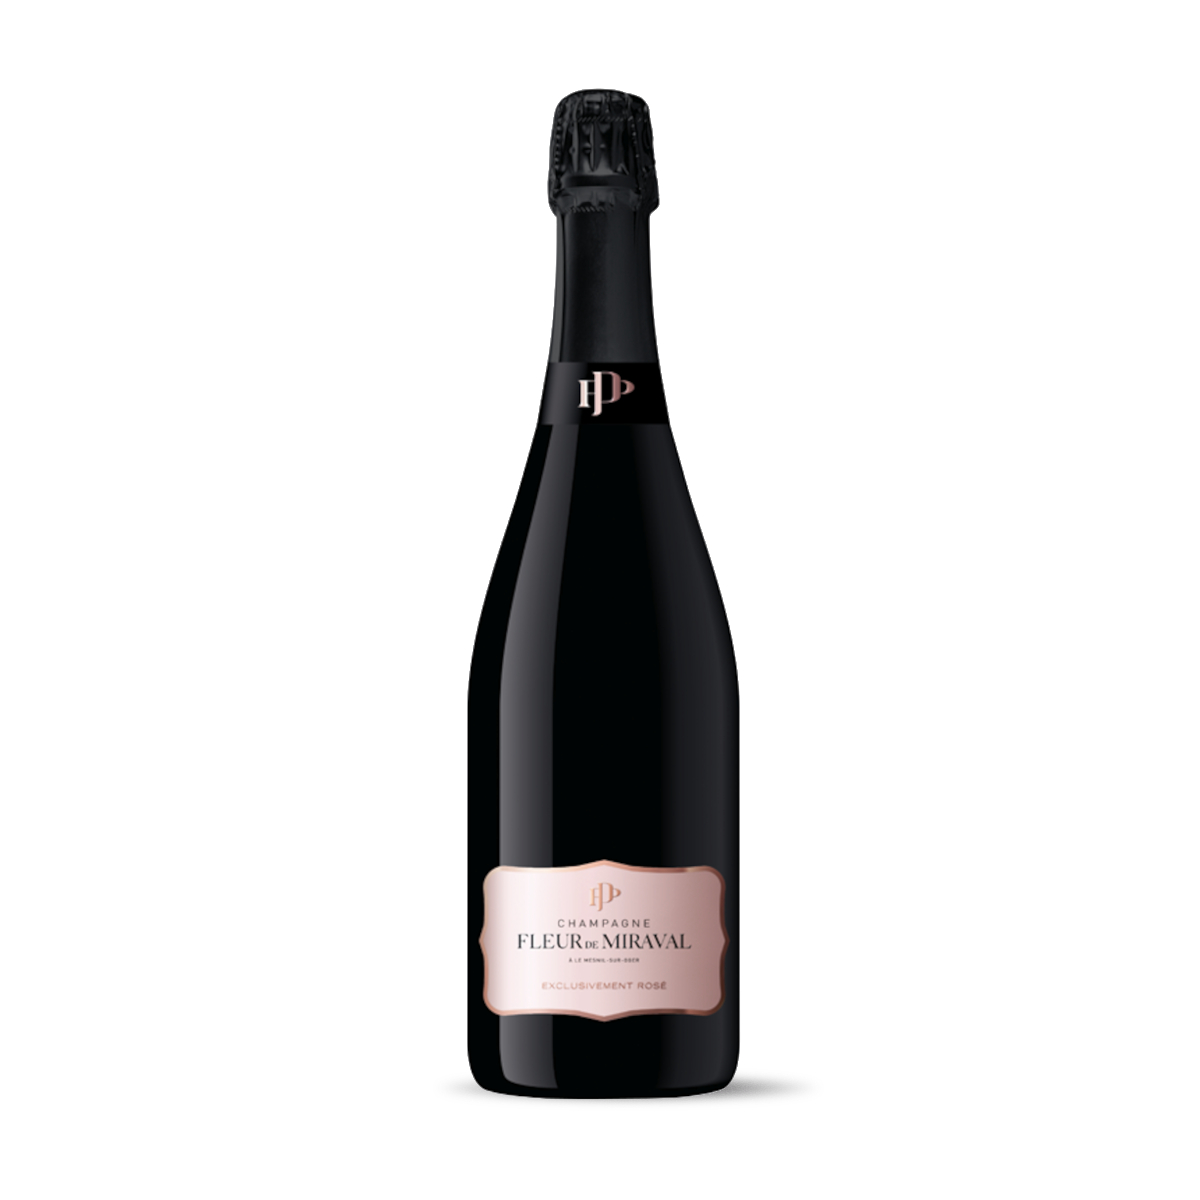 Cantina: MIRAVAL
Area: Le Mesnil-sur-Oger nella Cote de Blancs
Composizione: Chardonnay Grand Cru 2019, Chardonnay Grand Cru della Riserva Fleur de Miraval e Pinot Noir
Formato: 75 cl.